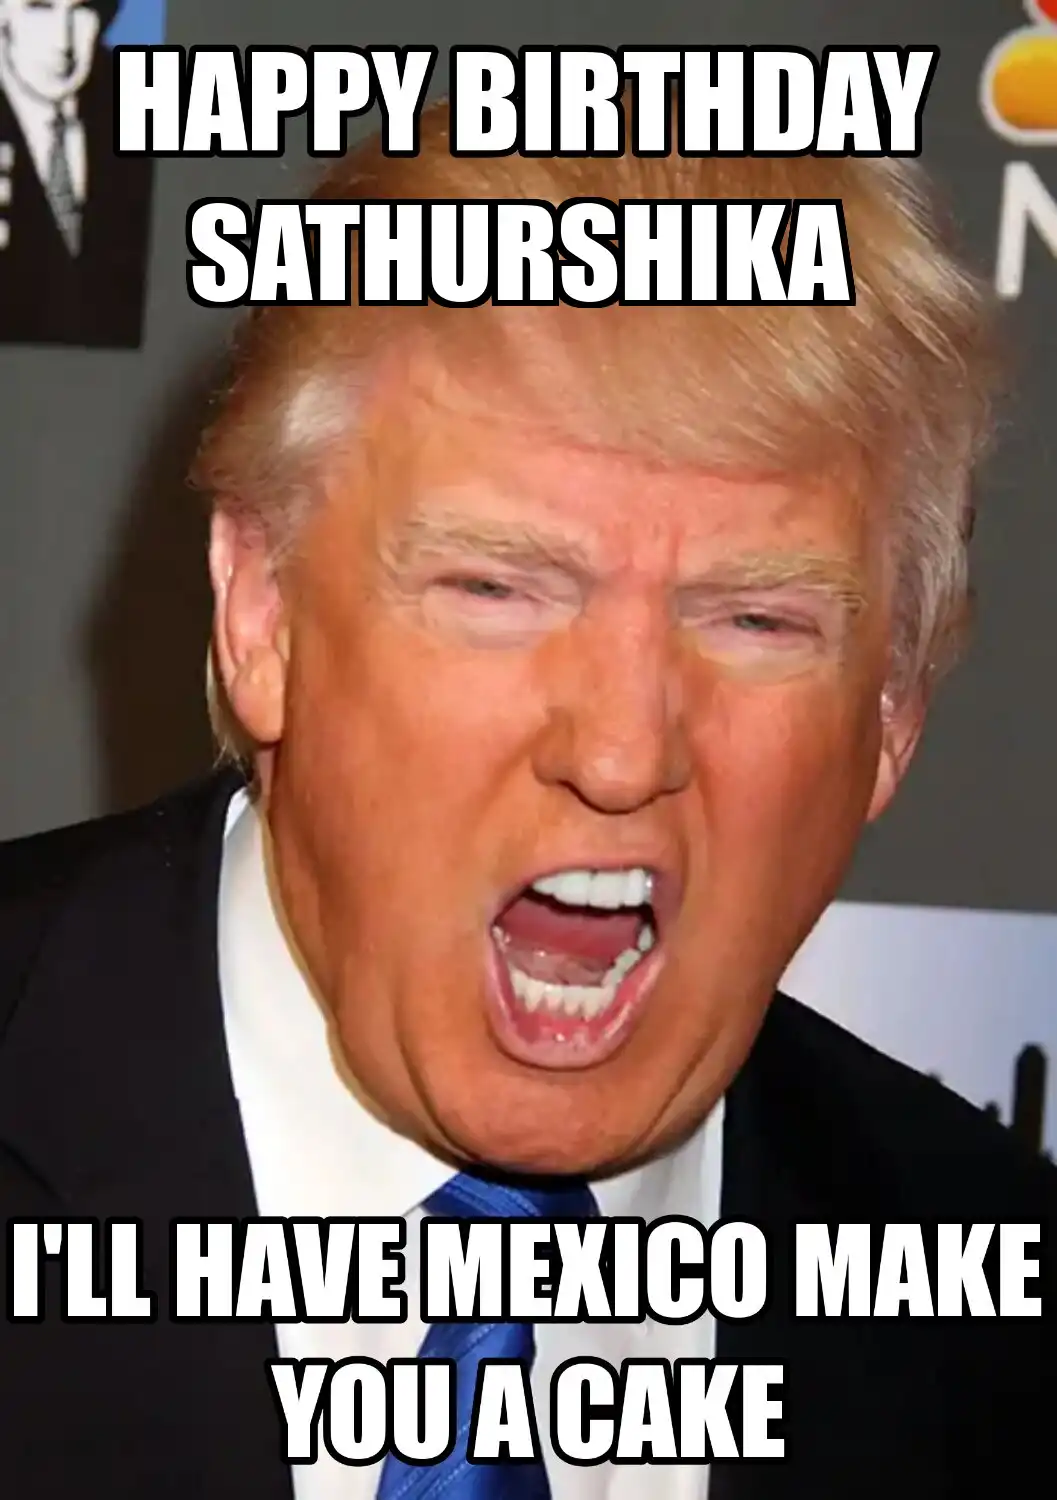 Happy Birthday Sathurshika Mexico Make You A Cake Meme